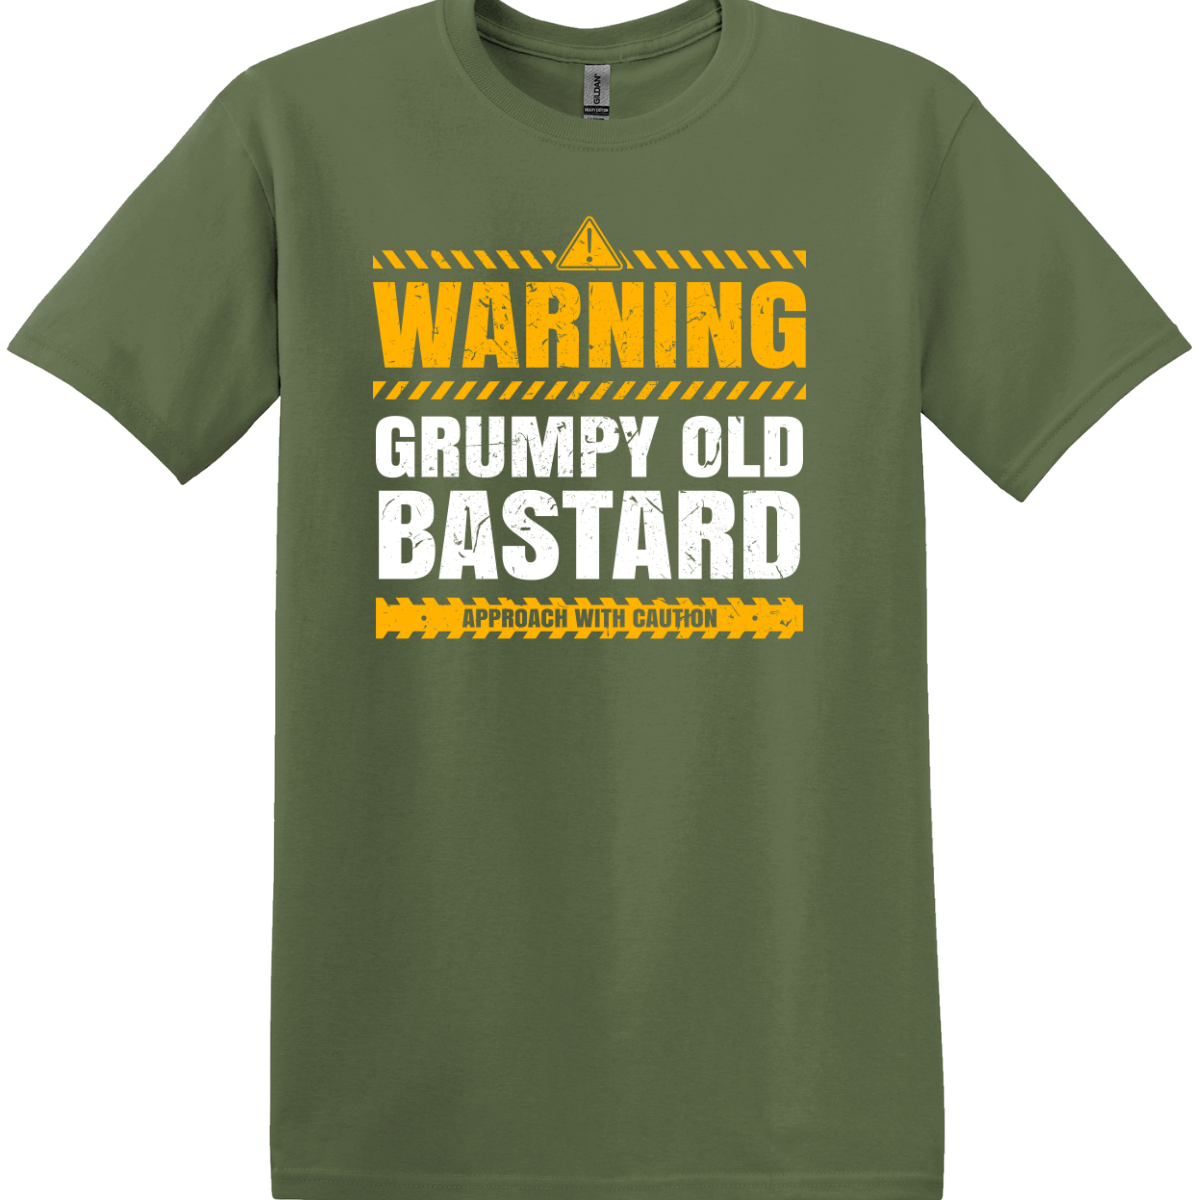 Warning Grumpy Old Bastard Tee